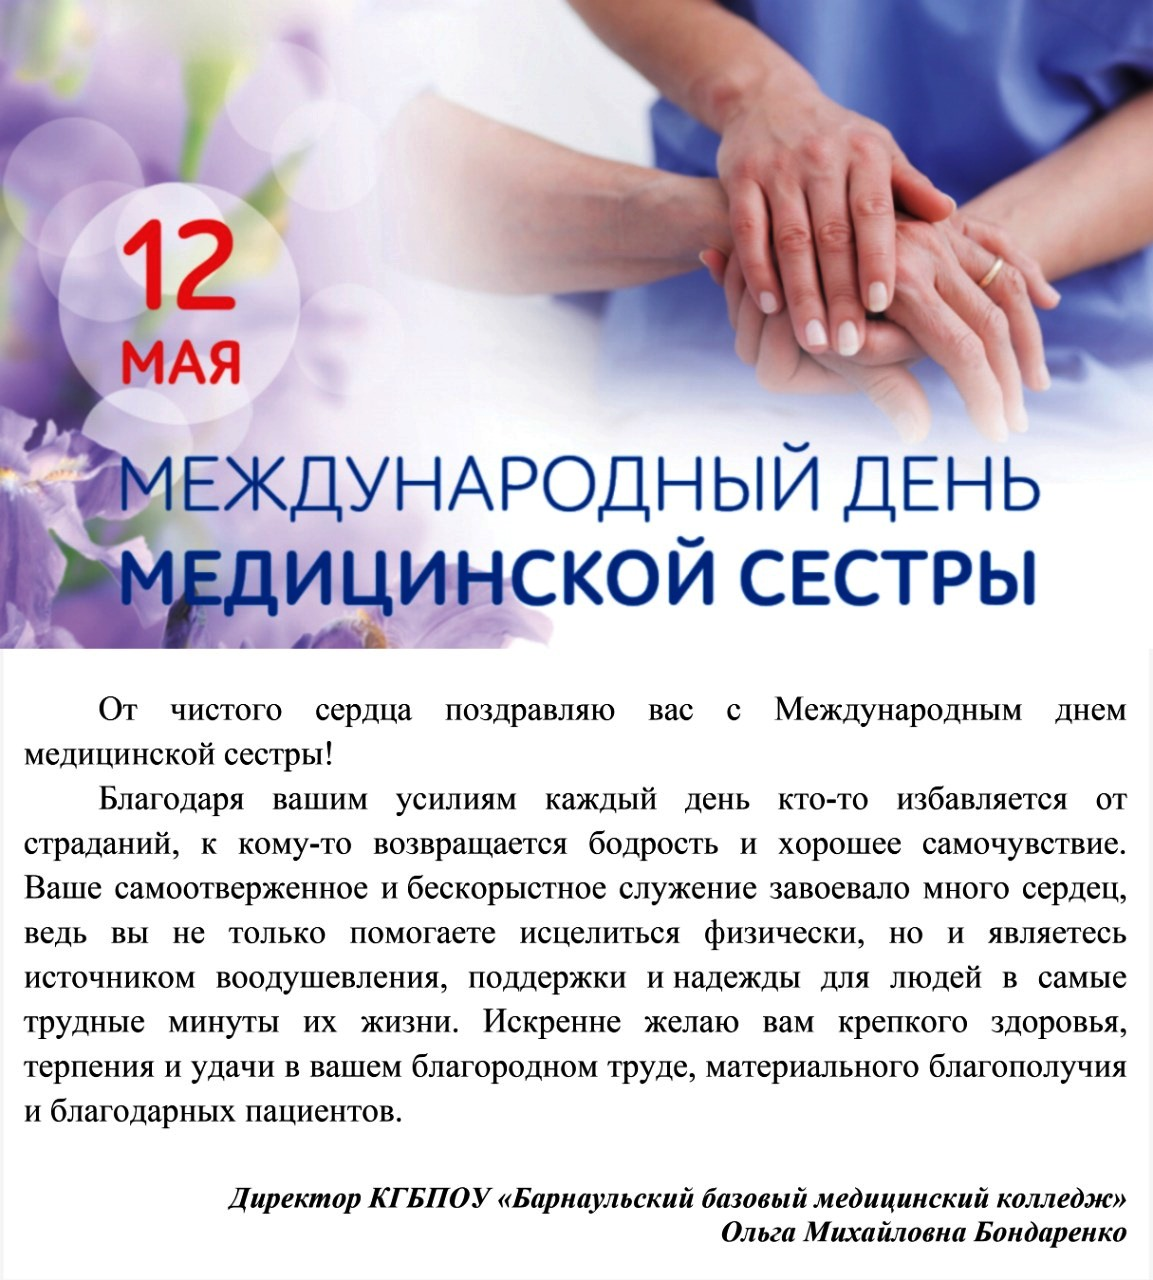 Поздравление Бондаренко О.М. с Международным днем медицинской сестры